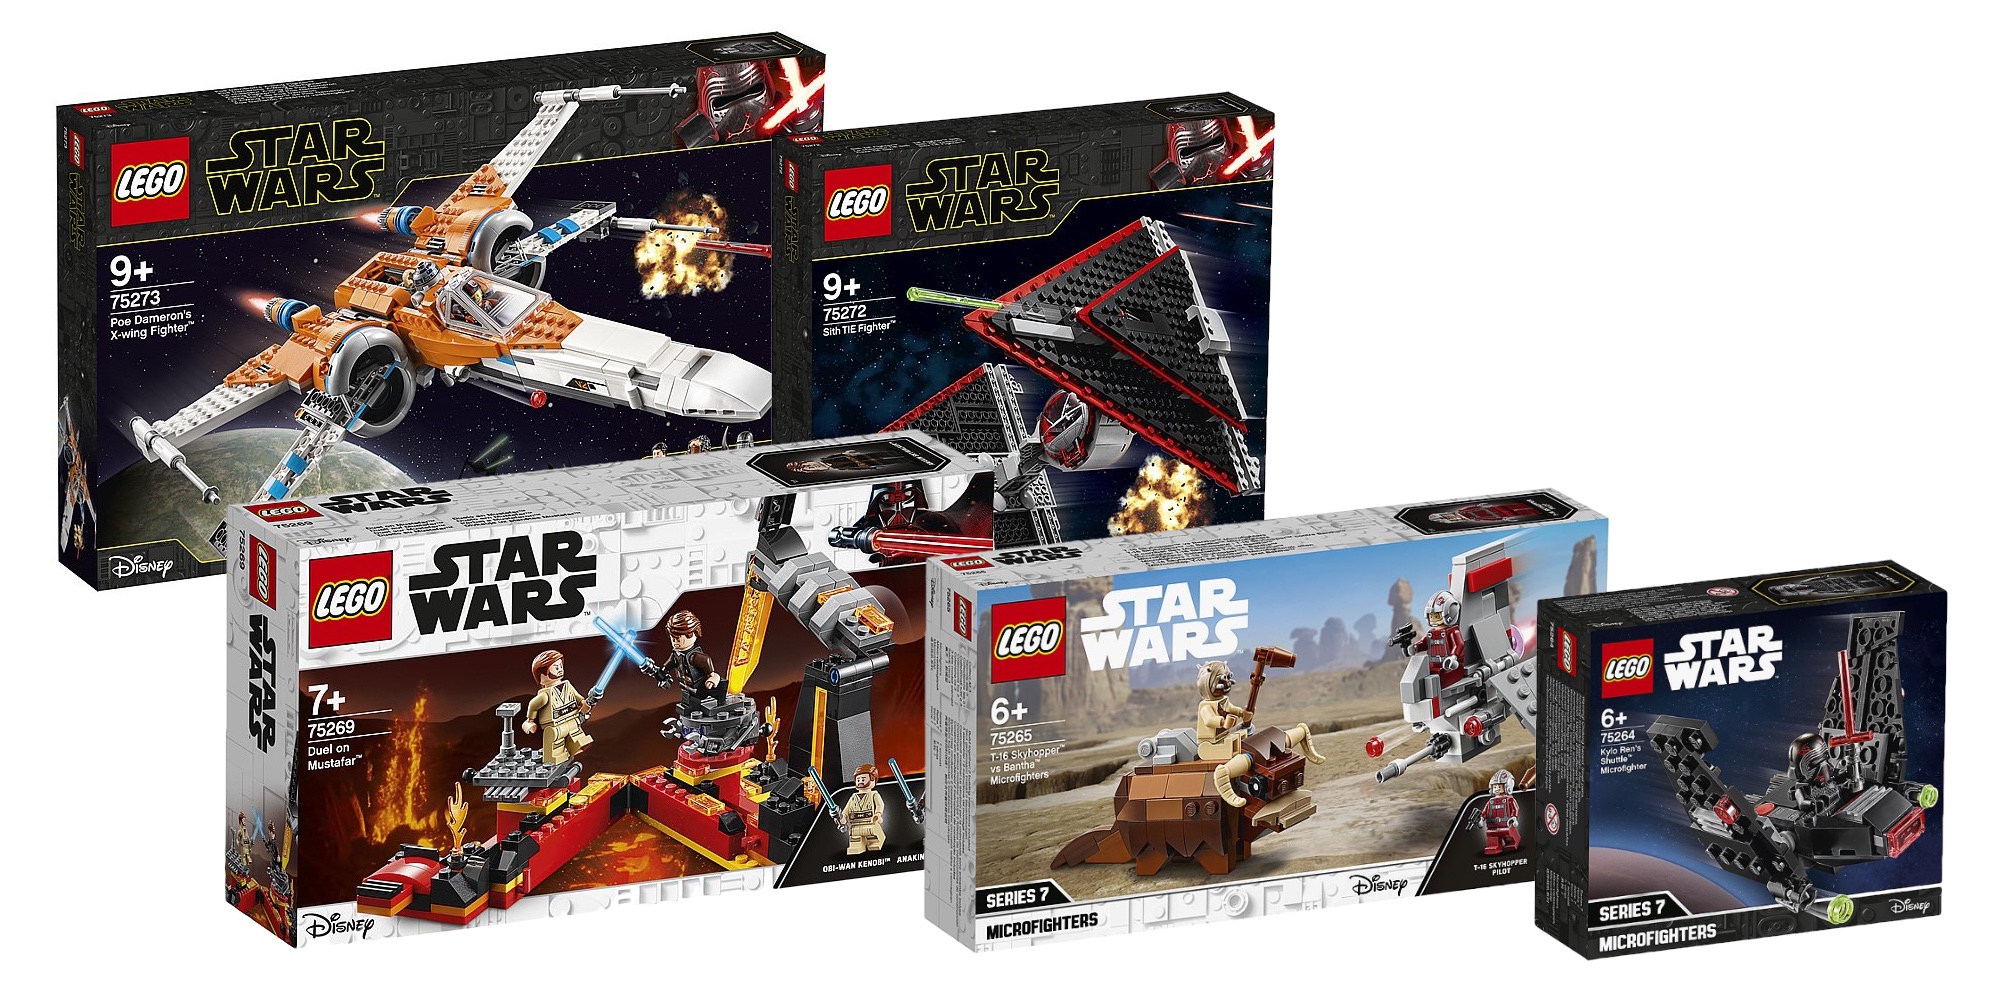 LEGO Star Wars 2020